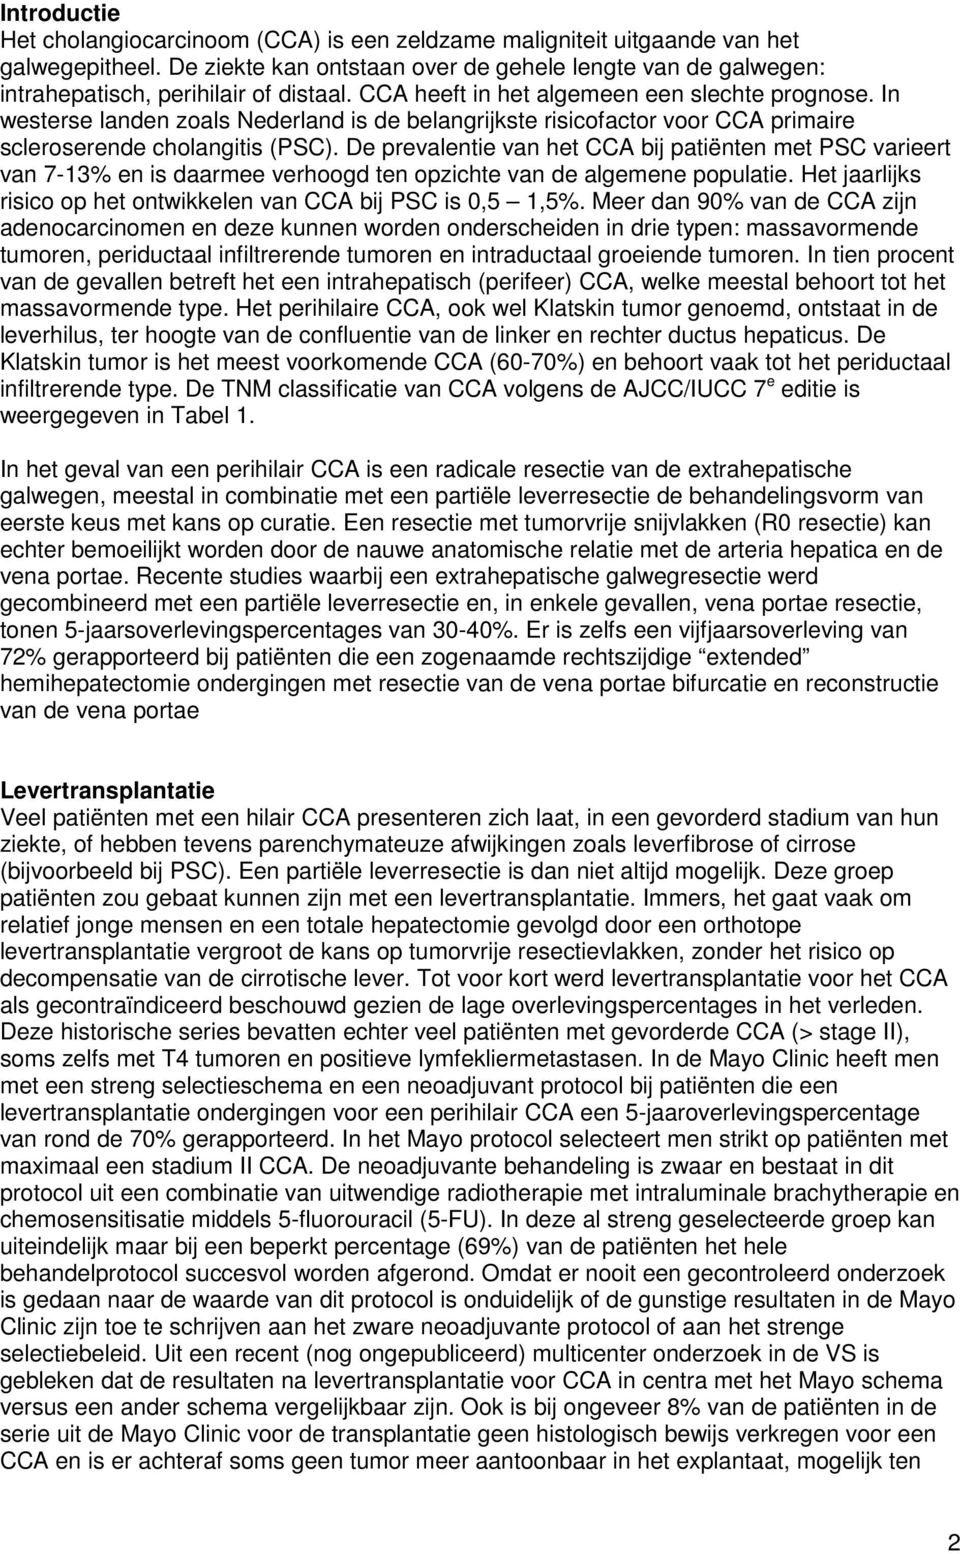 In westerse landen zoals Nederland is de belangrijkste risicofactor voor CCA primaire scleroserende cholangitis (PSC).